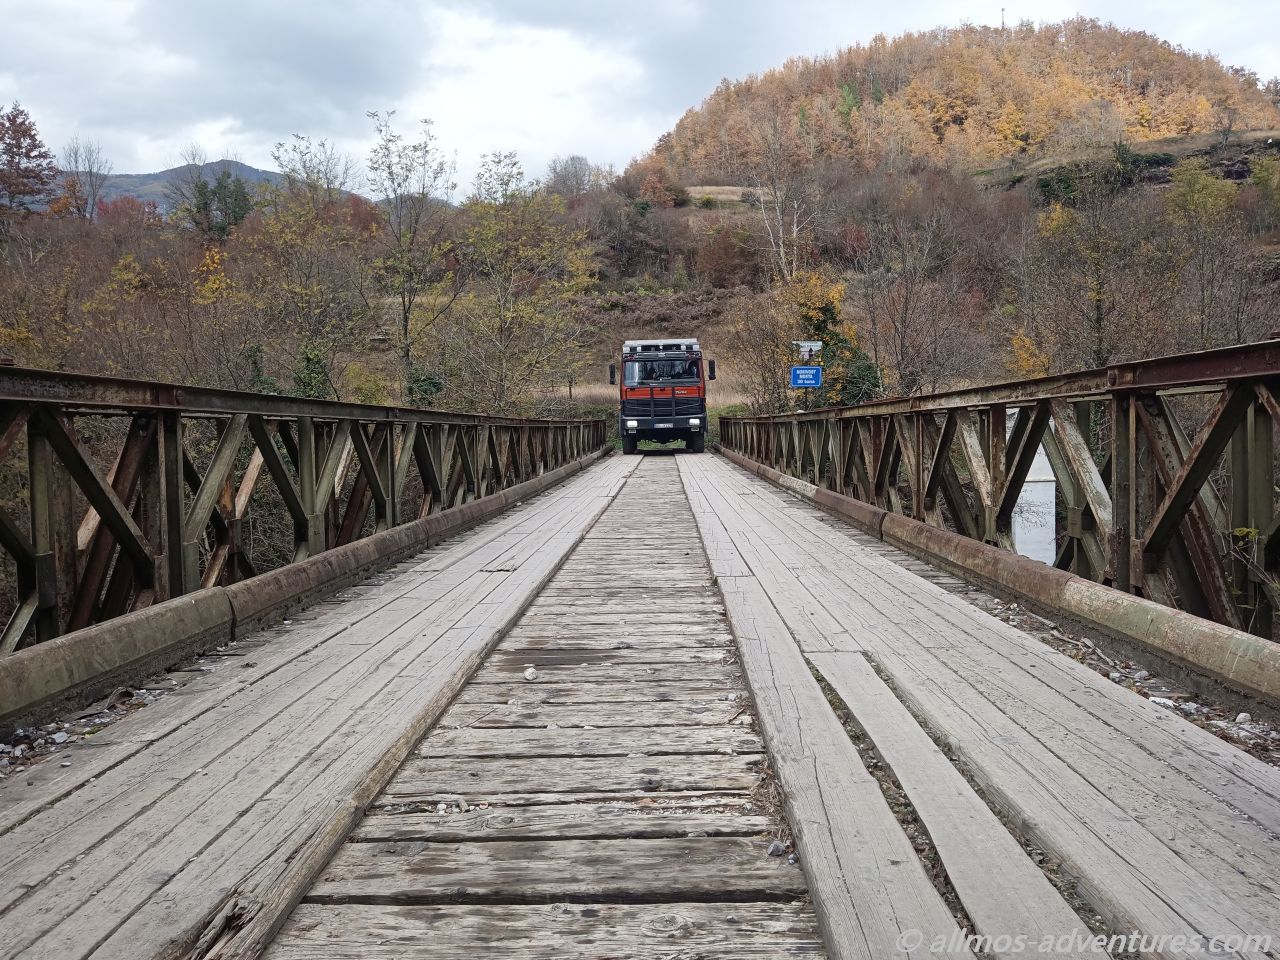 sehr vertrauenserweckend, die Brücke über den Fluss Mrtvica